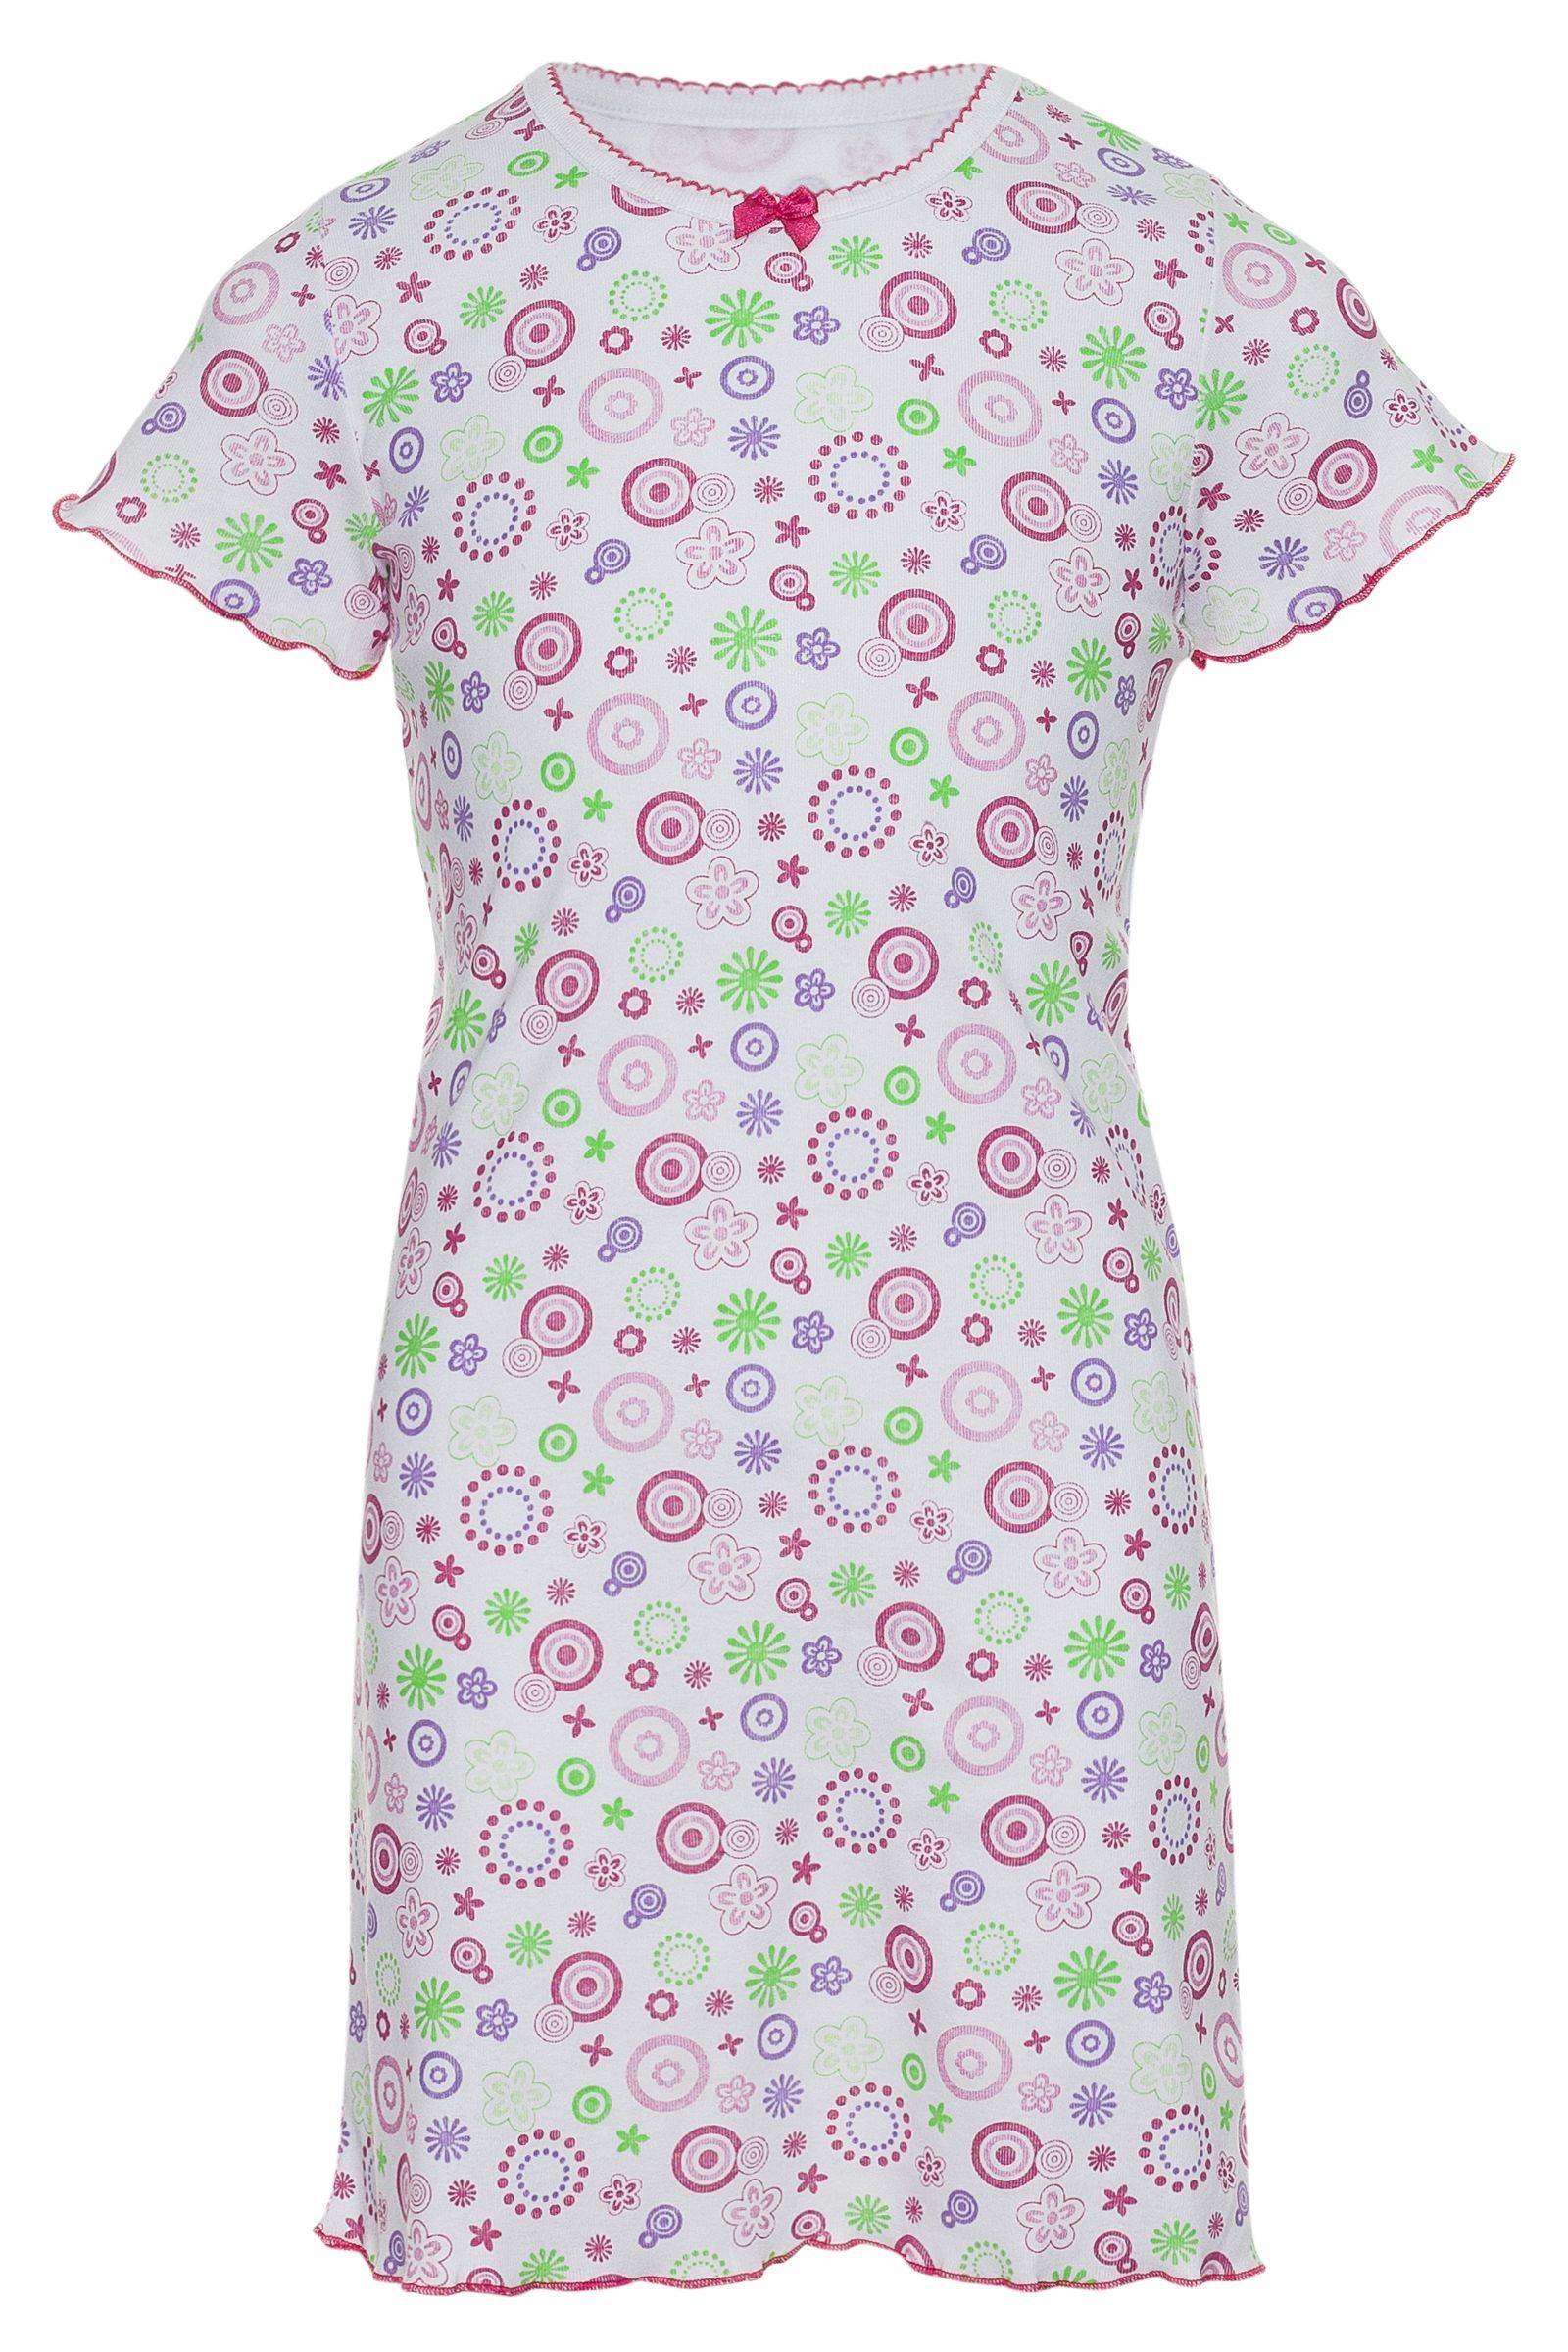 Ночная сорочка-СР03-1798 оптом от производителя детской одежды 'Алёна'